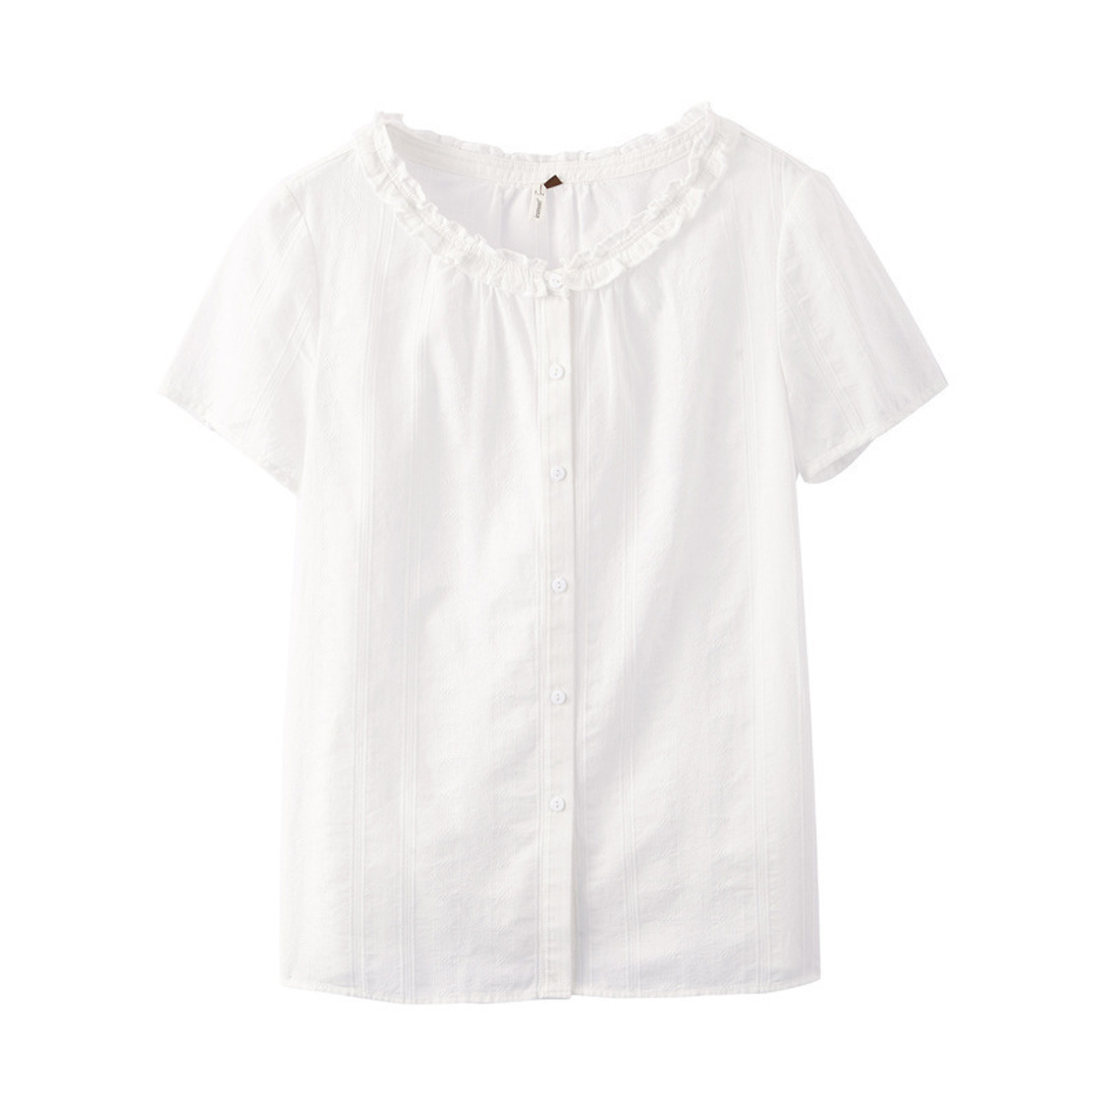 Women's Summer O-Neck Short Sleeve Shirt